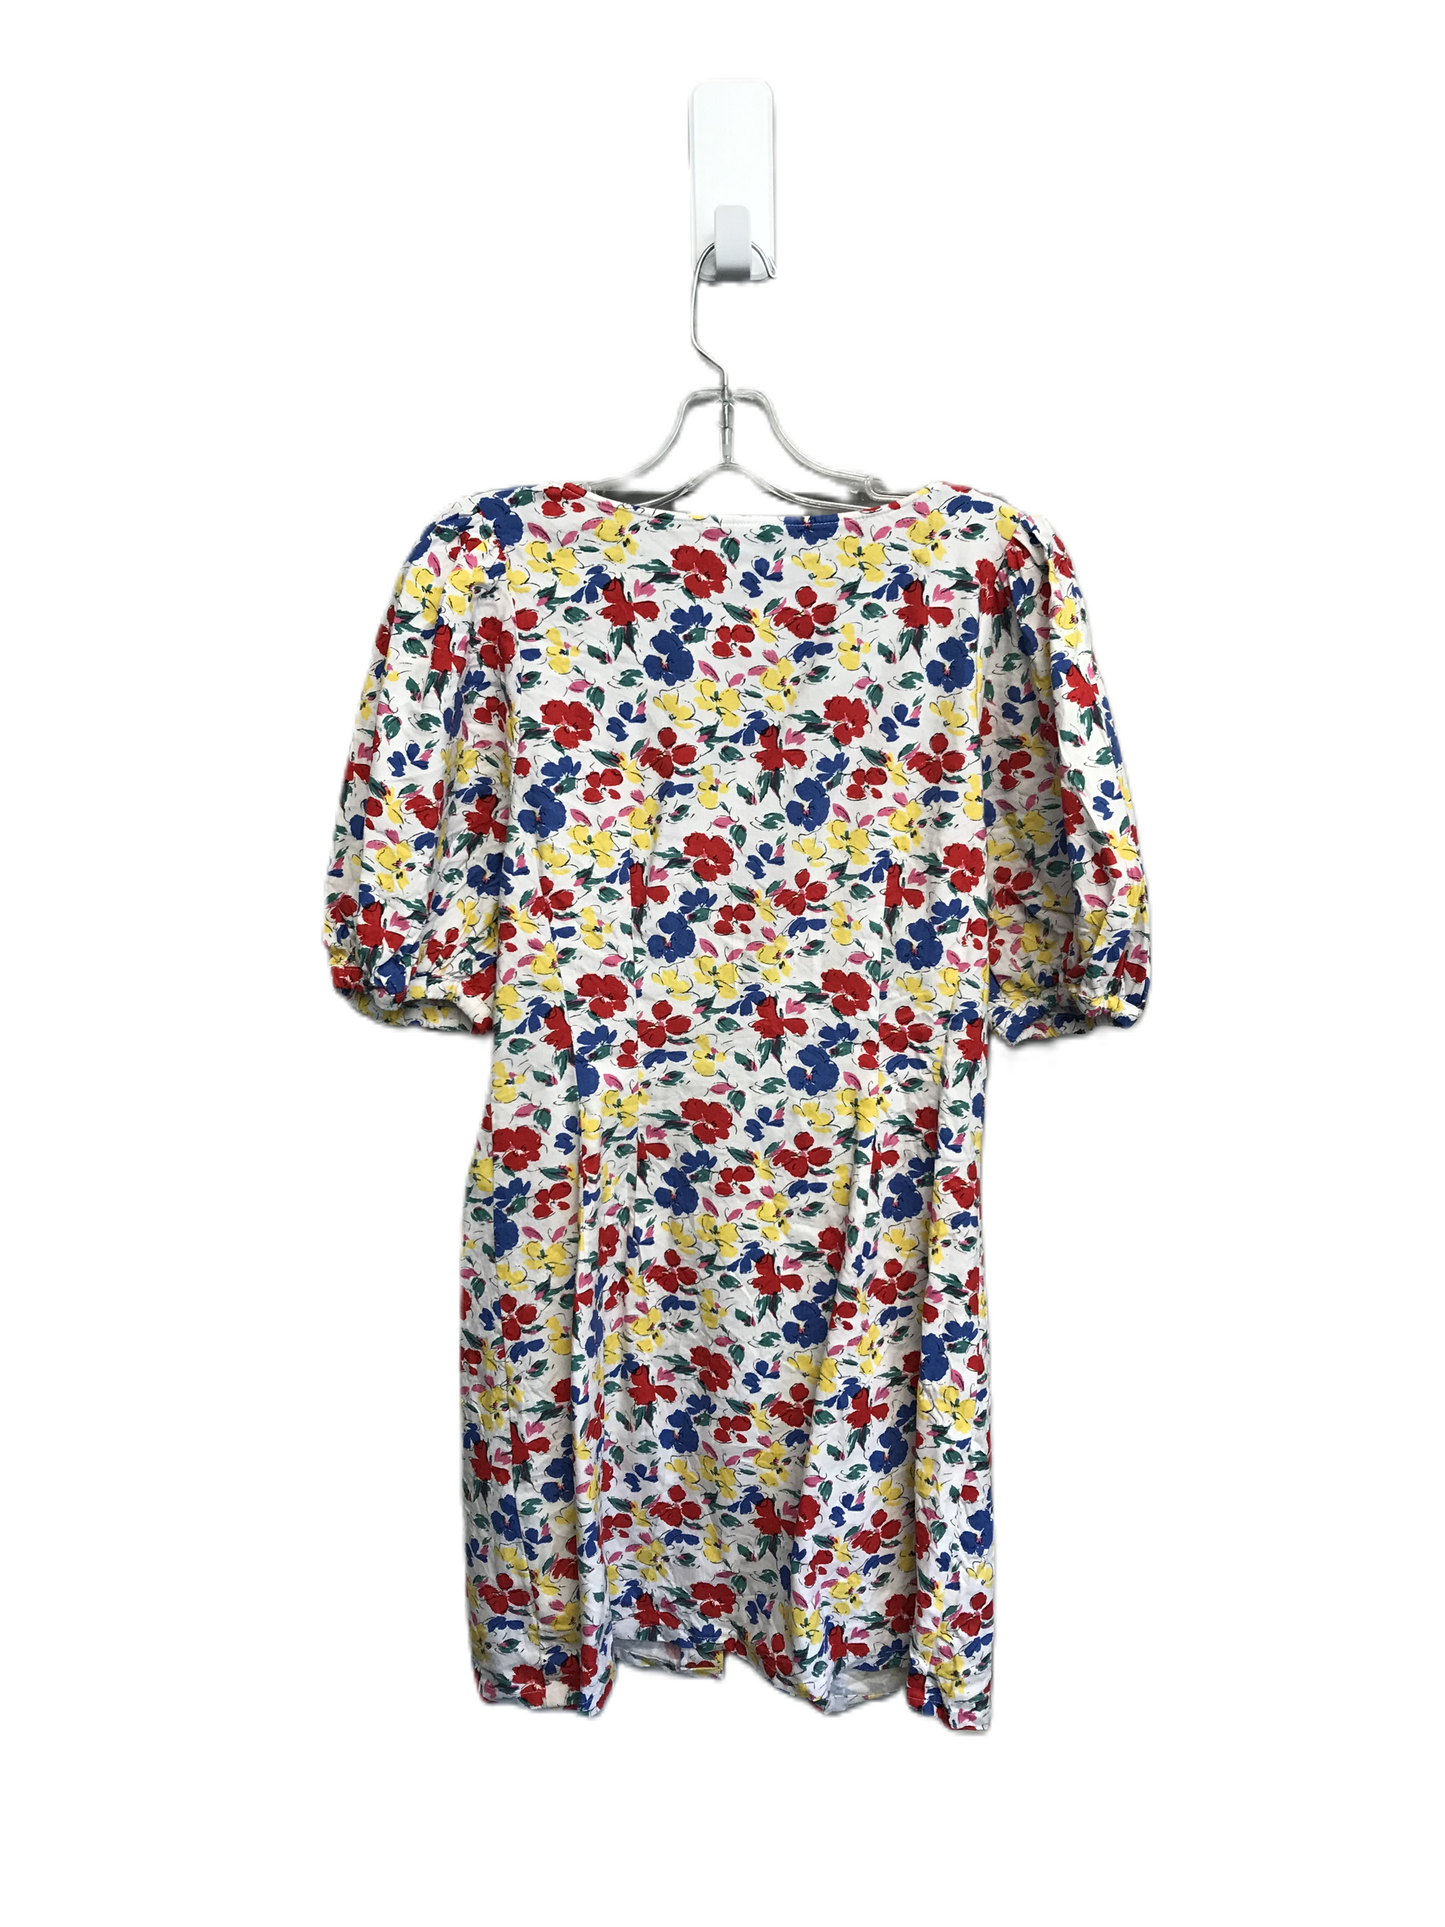 Floral Print Dress Work By Target-designer, Size: M